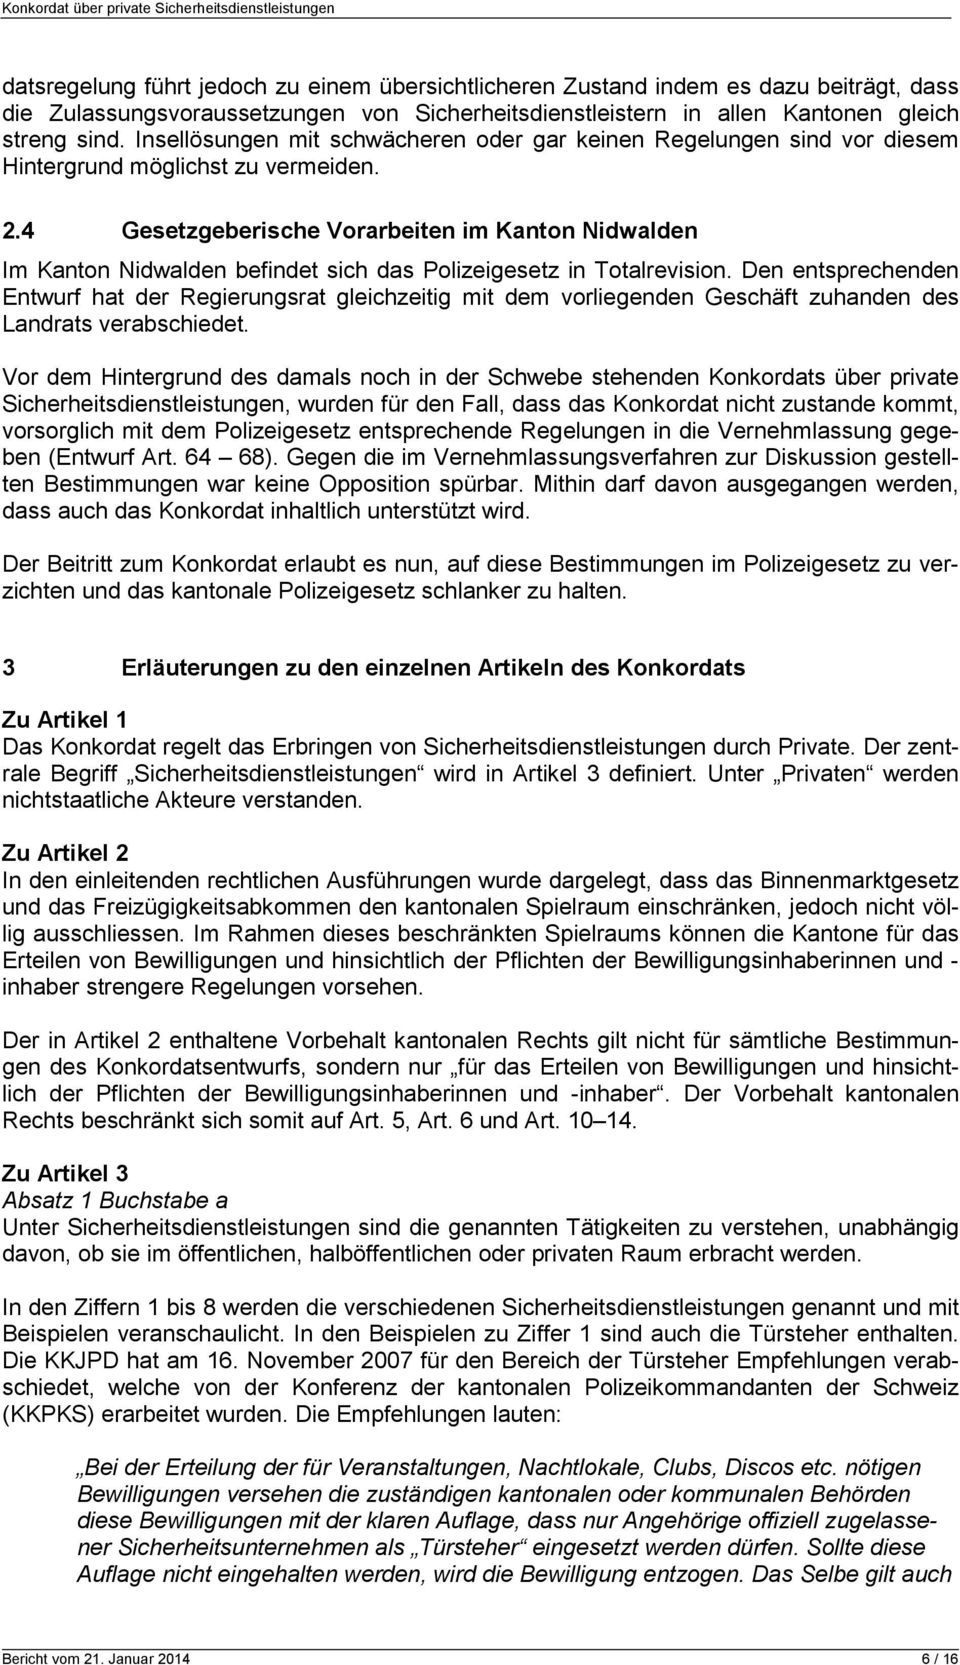 4 Gesetzgeberische Vorarbeiten im Kanton Nidwalden Im Kanton Nidwalden befindet sich das Polizeigesetz in Totalrevision.